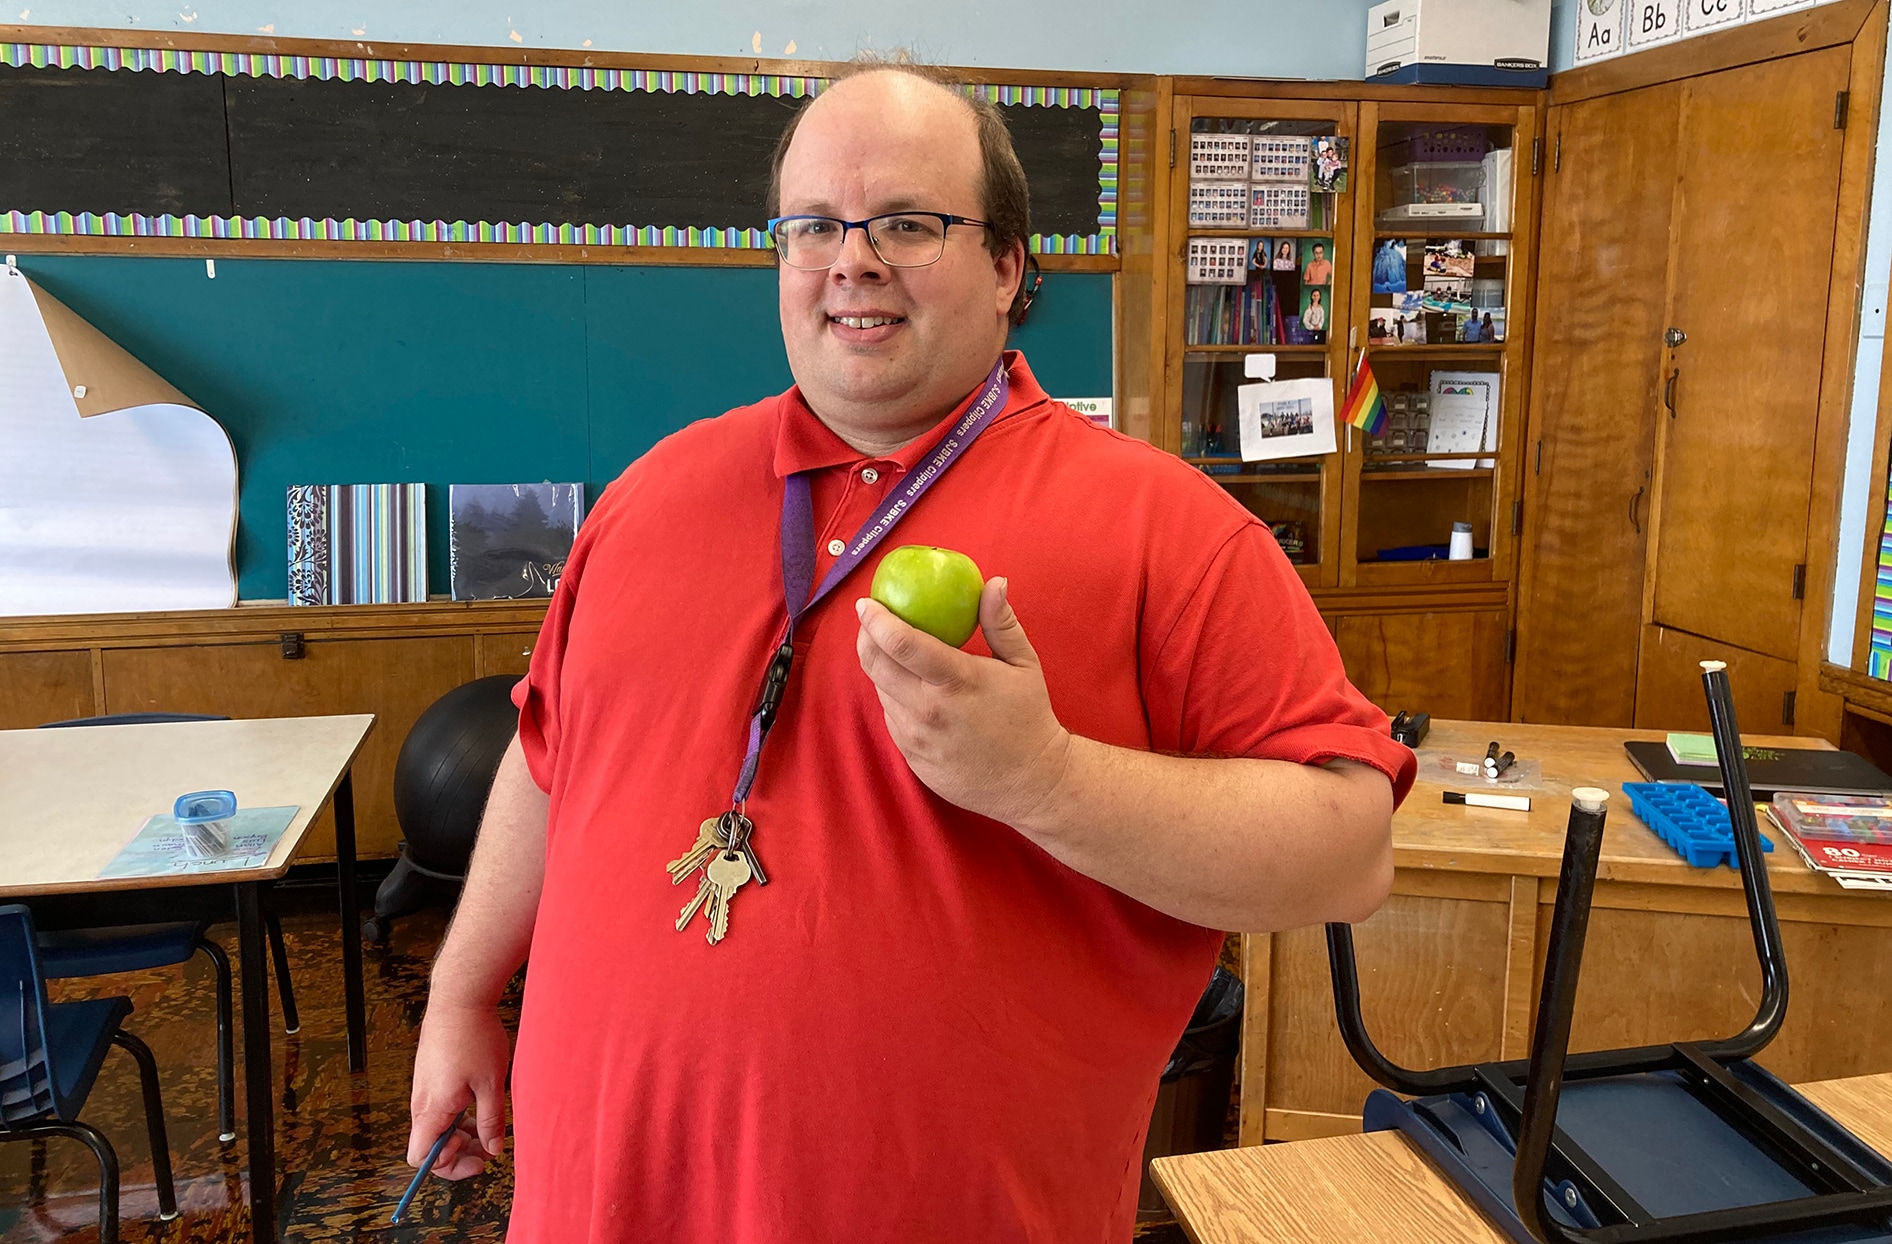 Ben se tient dans une salle de classe de son école en tenant une pomme.